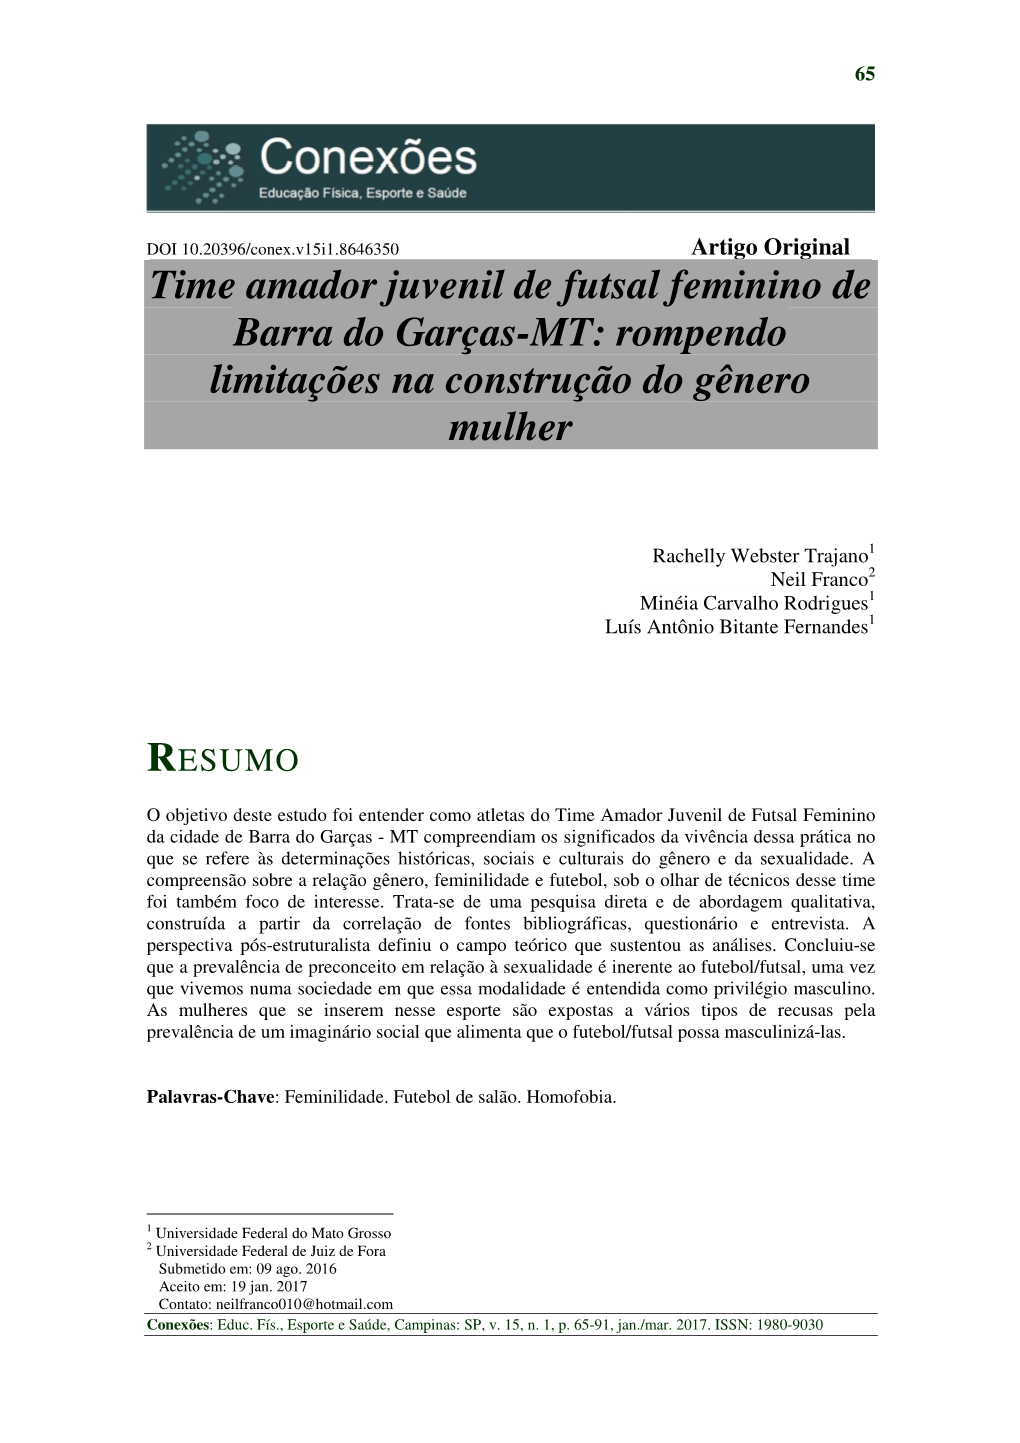 Futsal Feminino De Barra Do Garças-MT: Rompendo Limitações Na Construção Do Gênero Mulher